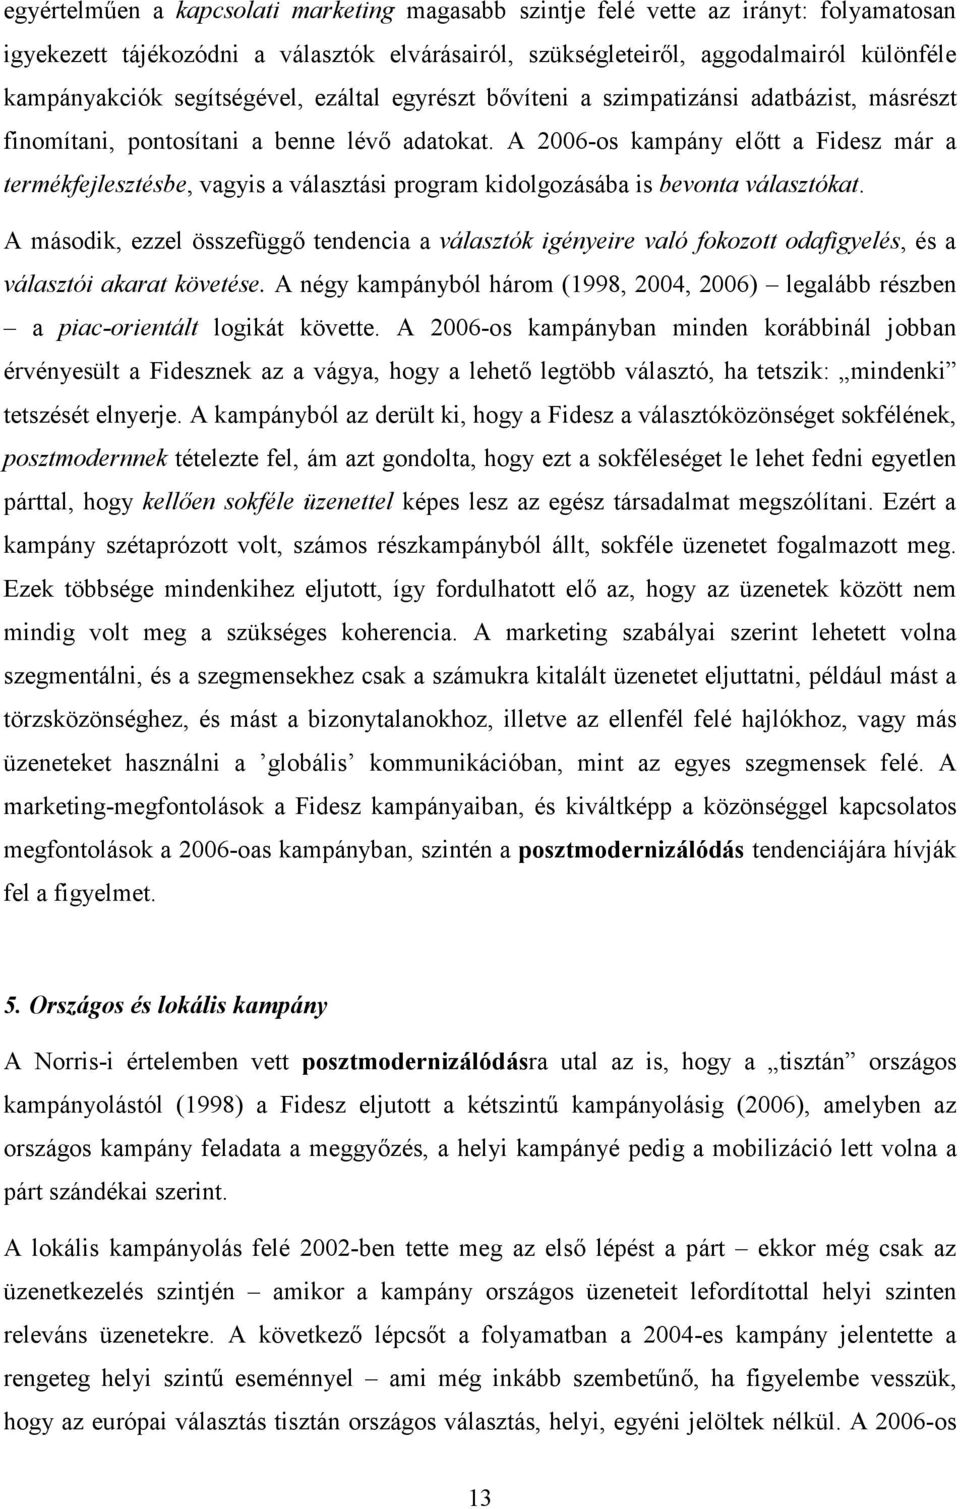 A 2006-os kampány elıtt a Fidesz már a termékfejlesztésbe, vagyis a választási program kidolgozásába is bevonta választókat.